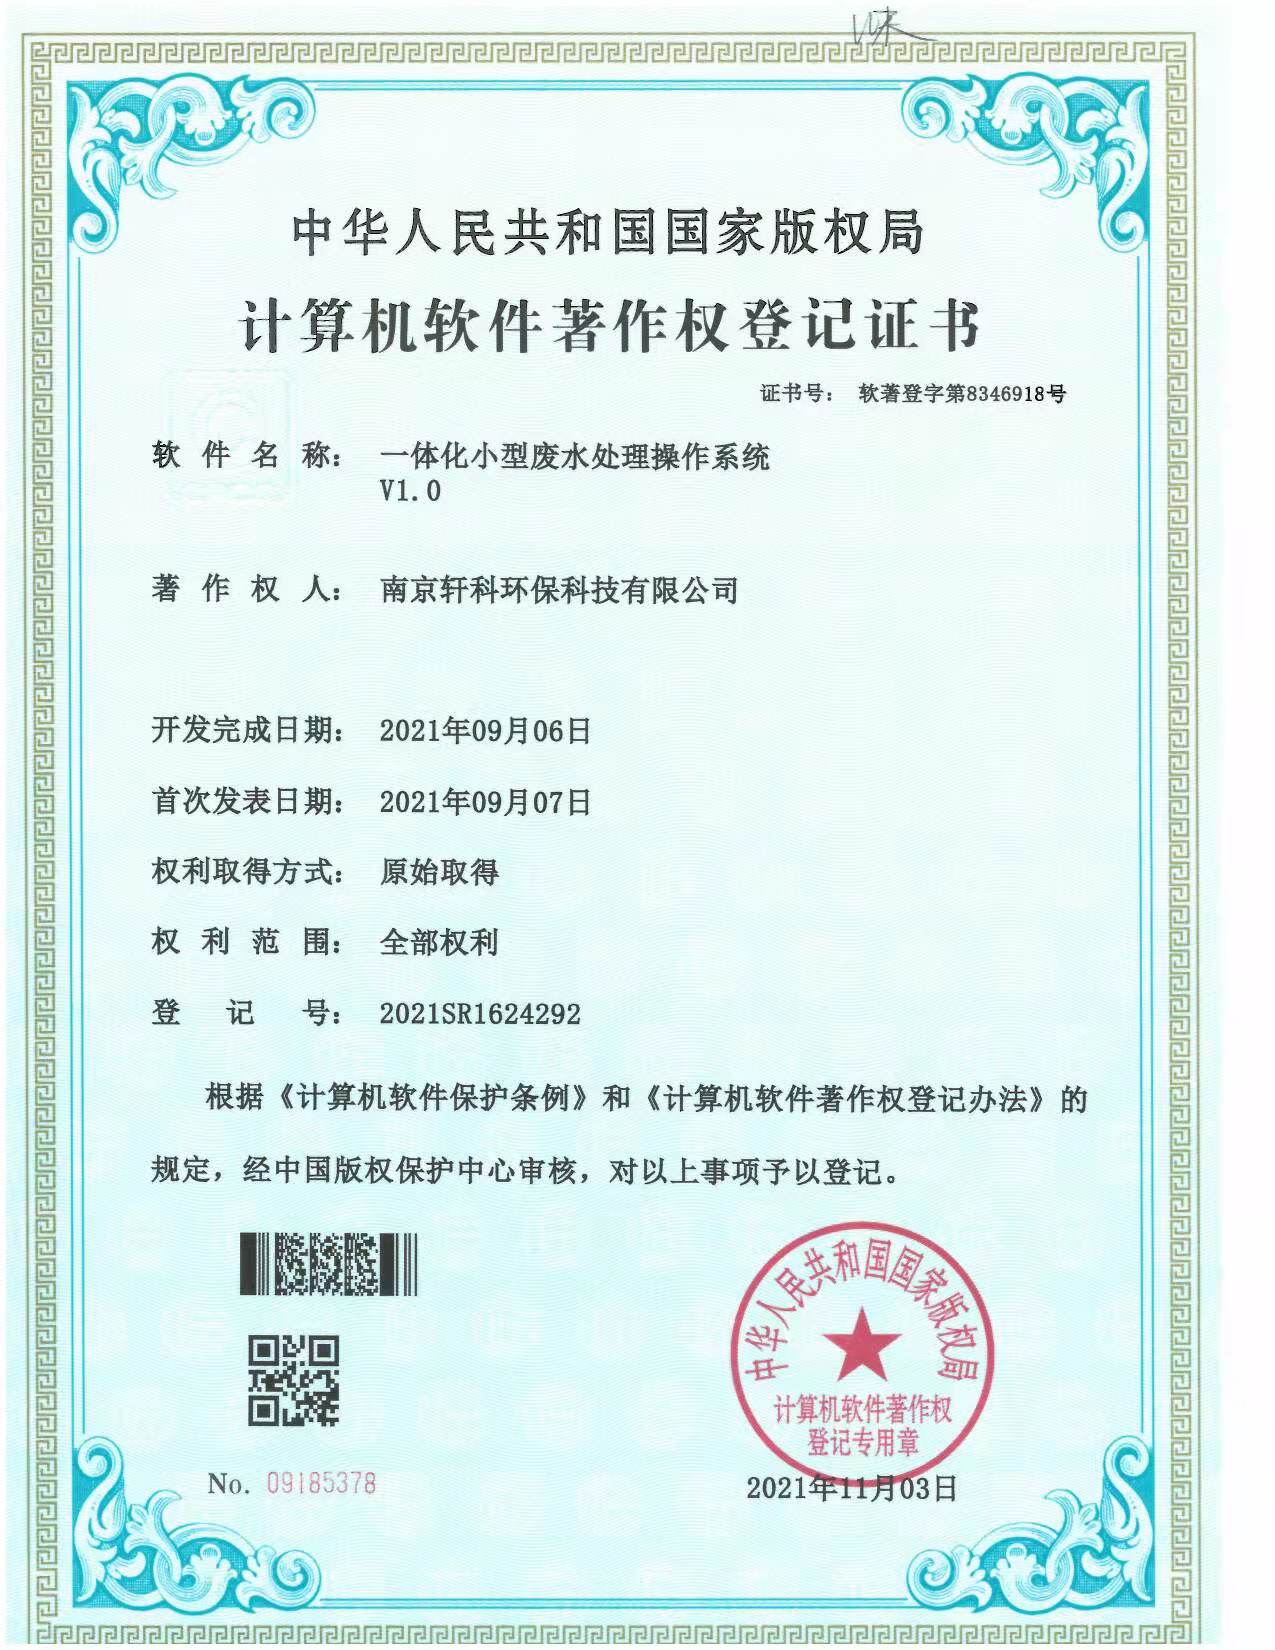 北京小型一体化废水处理系统软件著作权证书